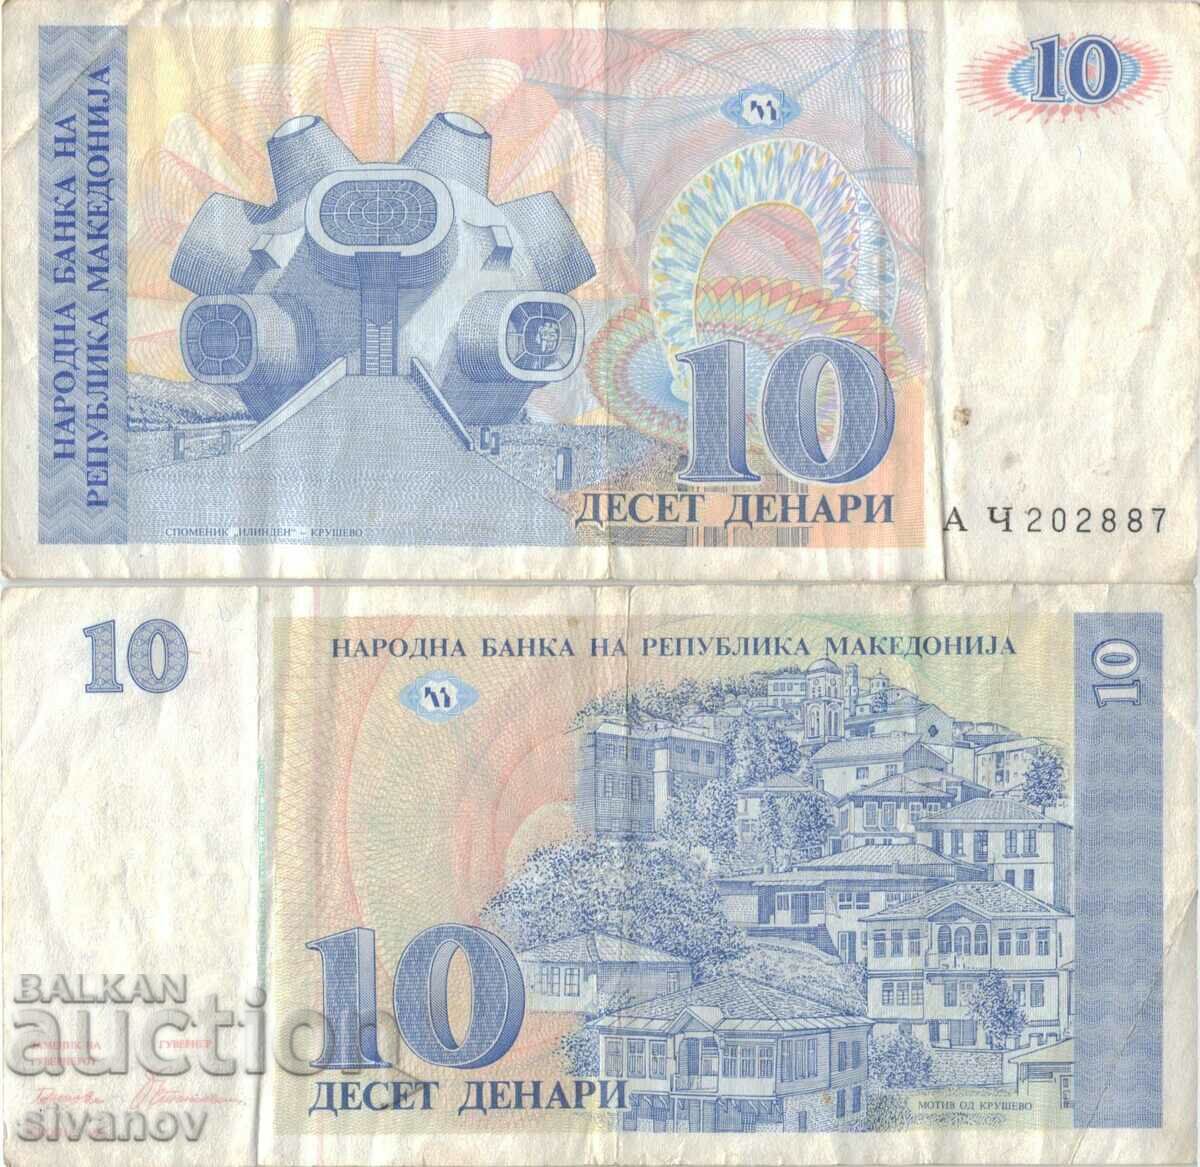 Macedonia 10 denars 1993 banknote #5213